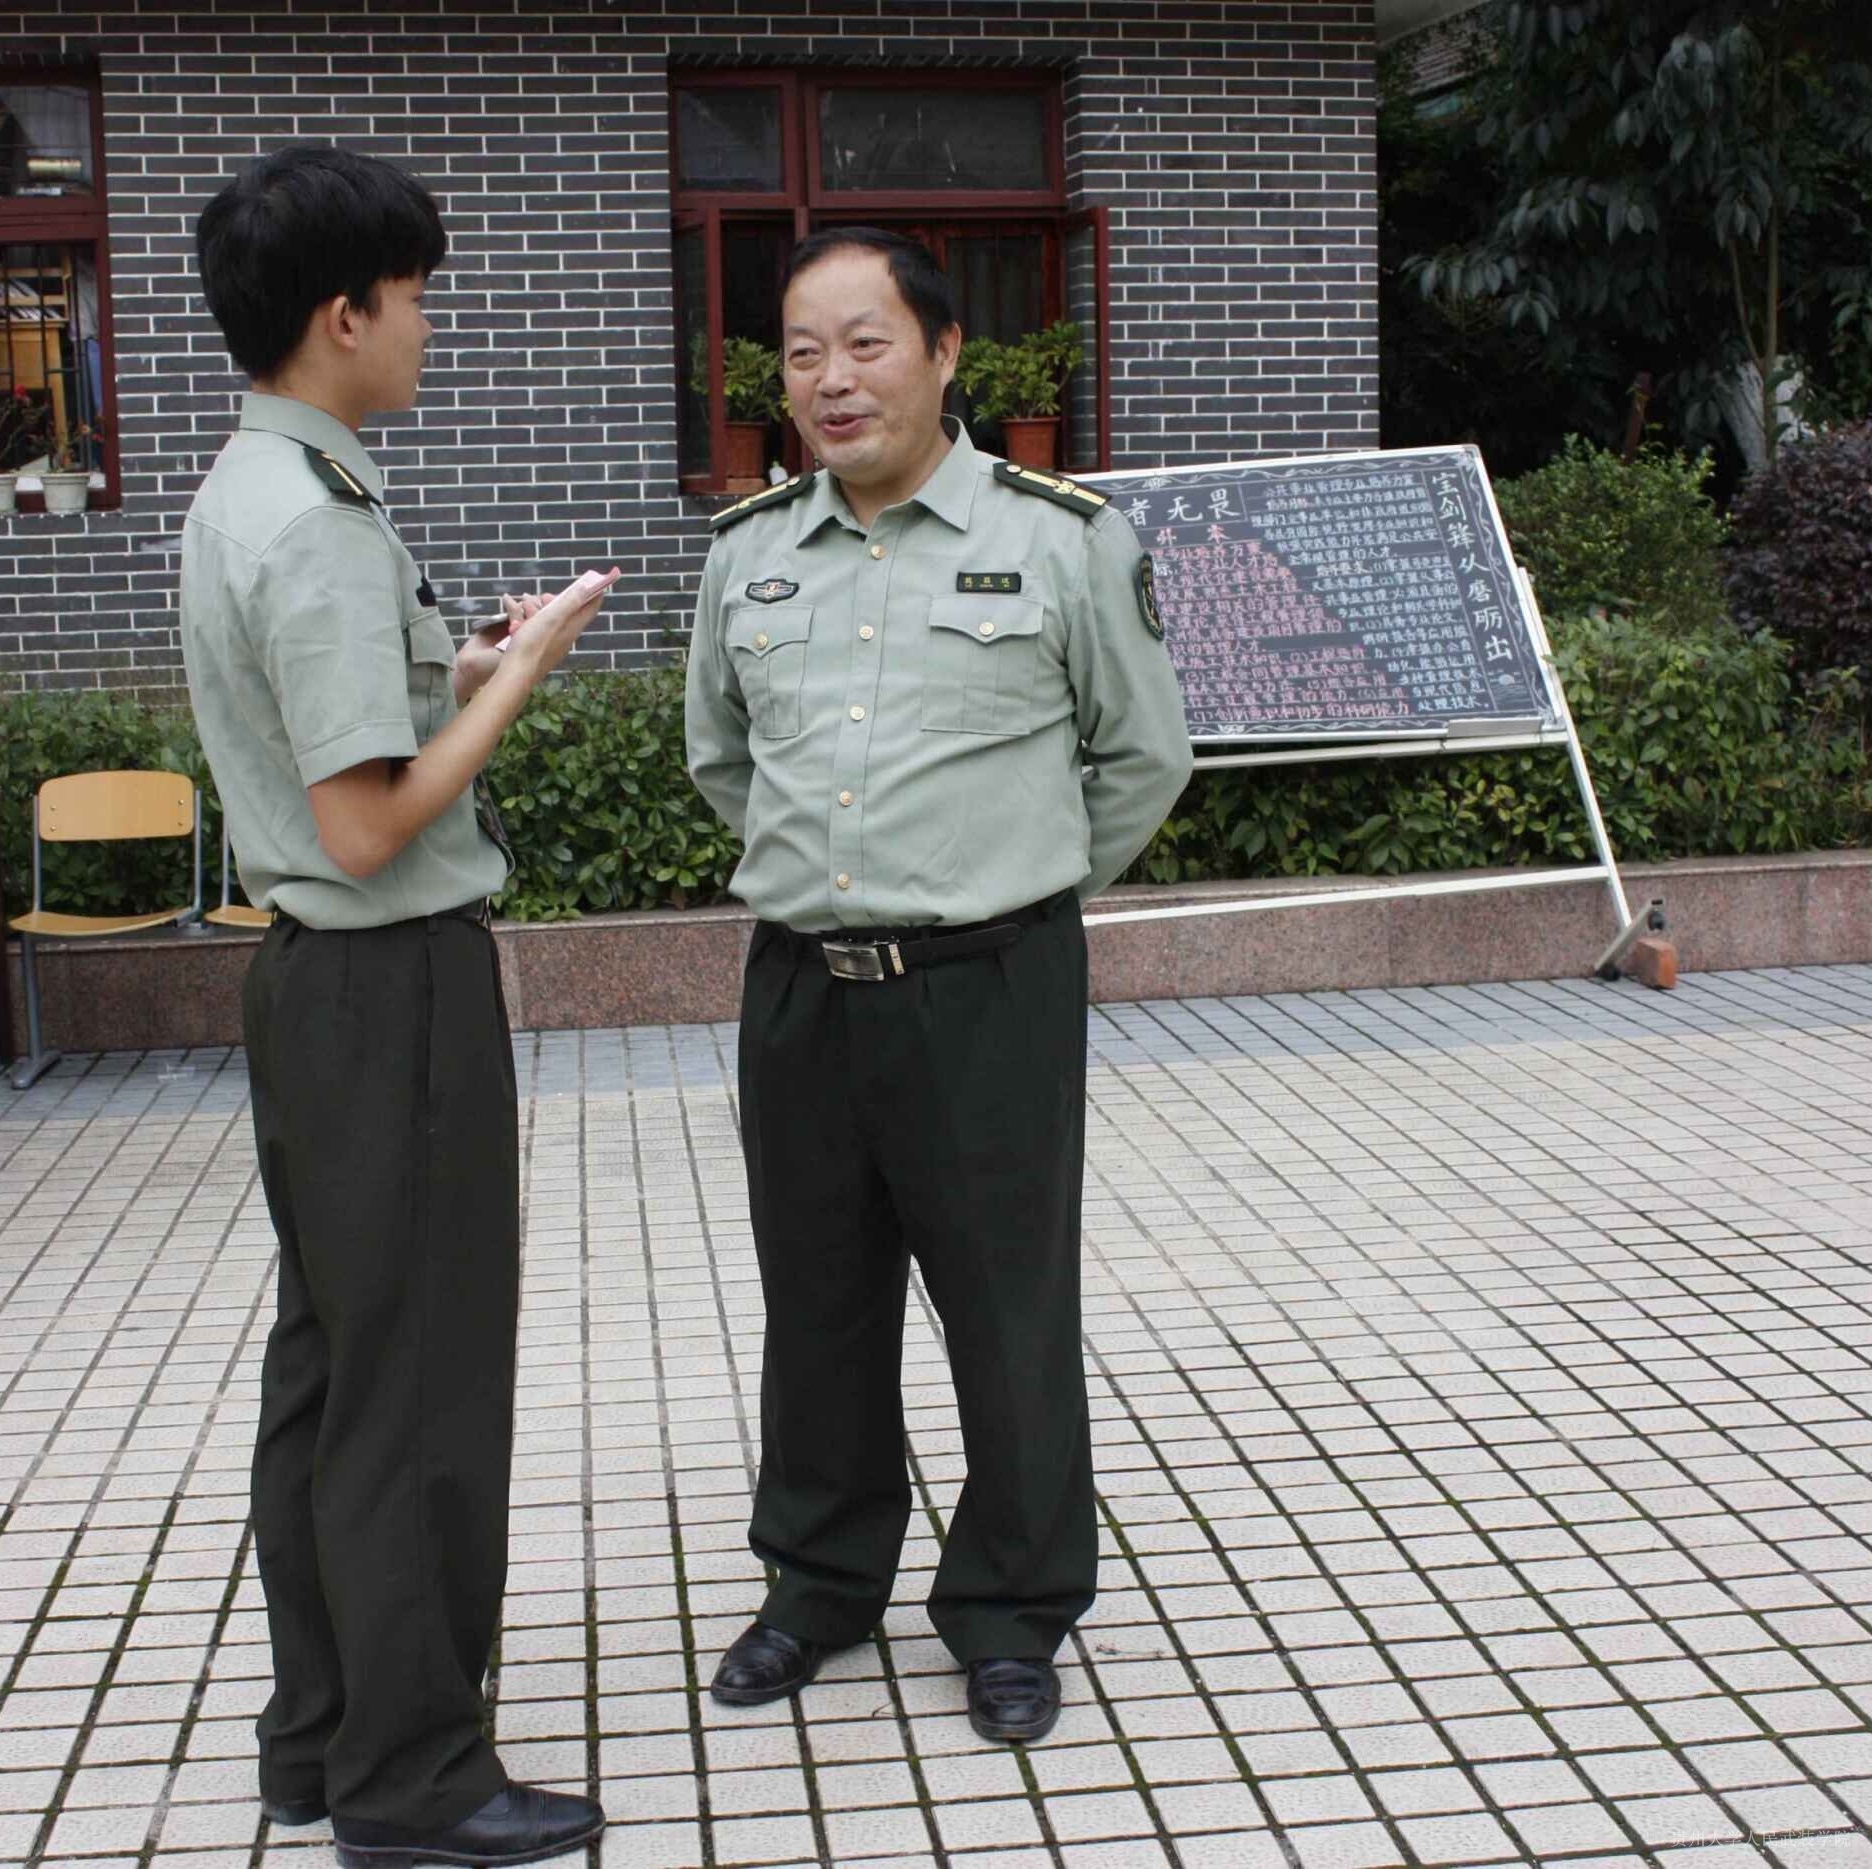 首页 通知公告 学院新闻 2015年9月28日至29日,贵州大学人民武装学院